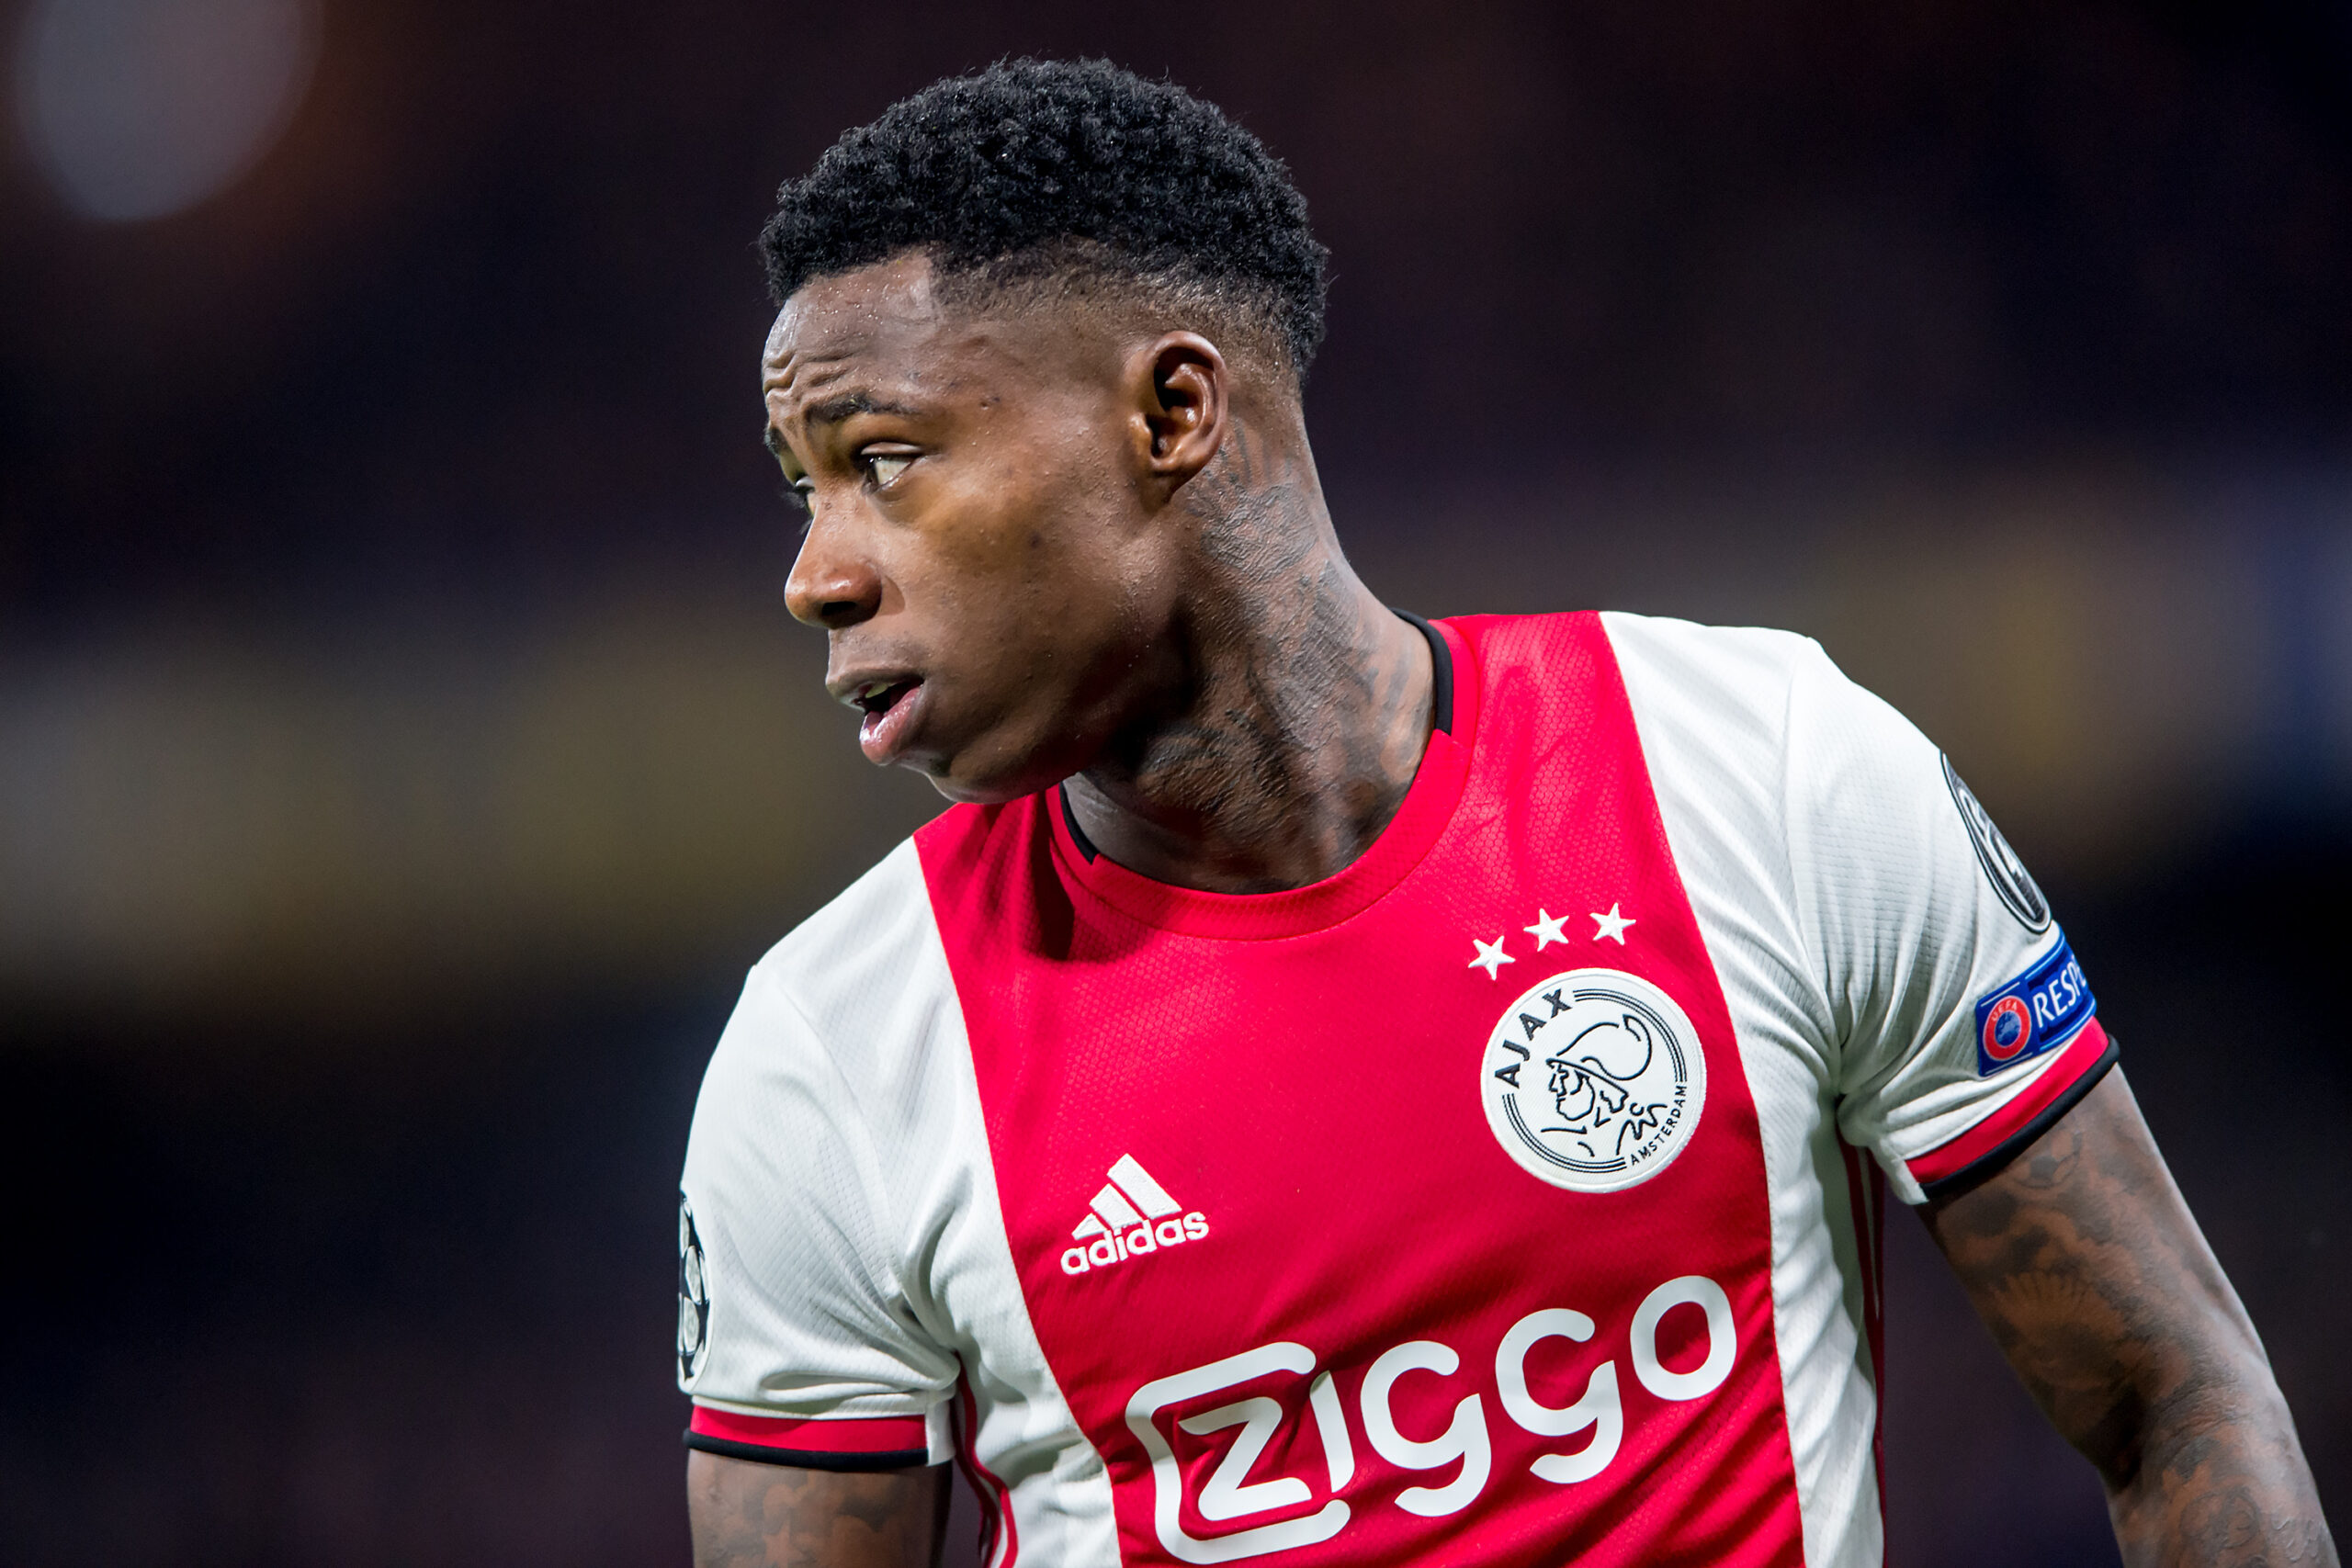 El jugador holandes, Quincy Promes, compañero de Edson Álvarez y Jorge Sánchez en el Ajax de la Eredivisie, fue procesado por traficar cocaína.